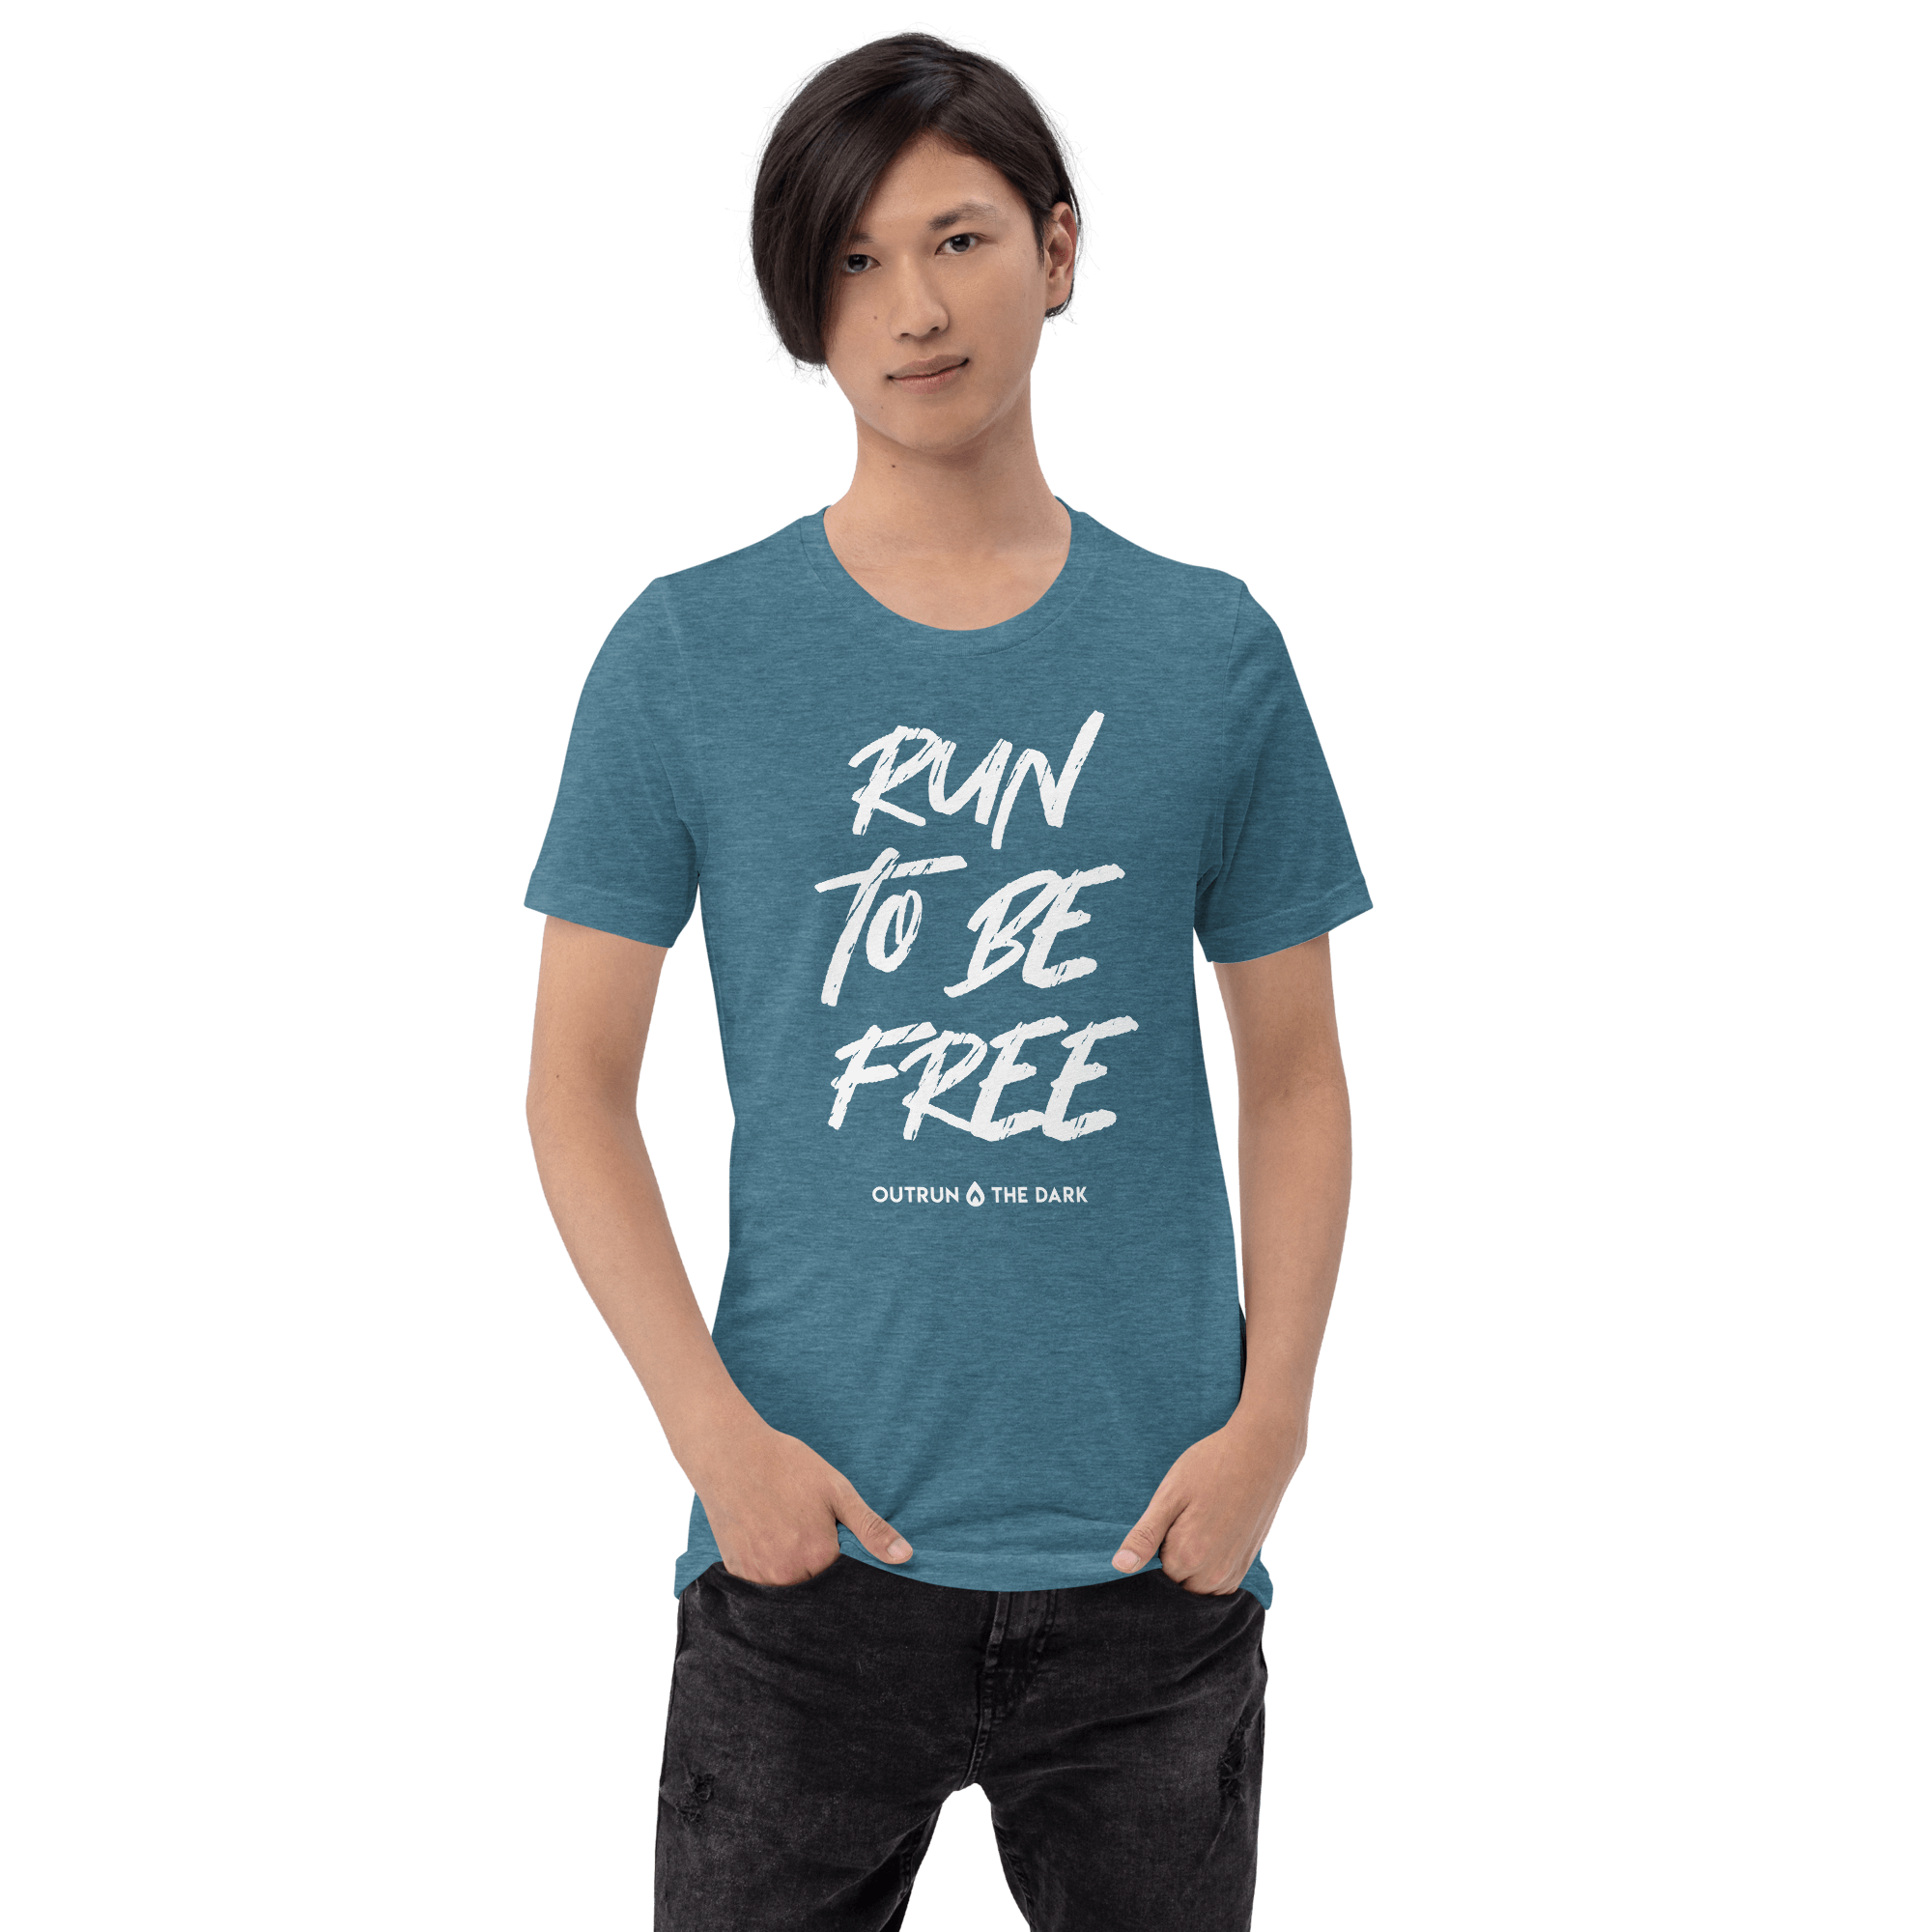 Run to be free Men's tee